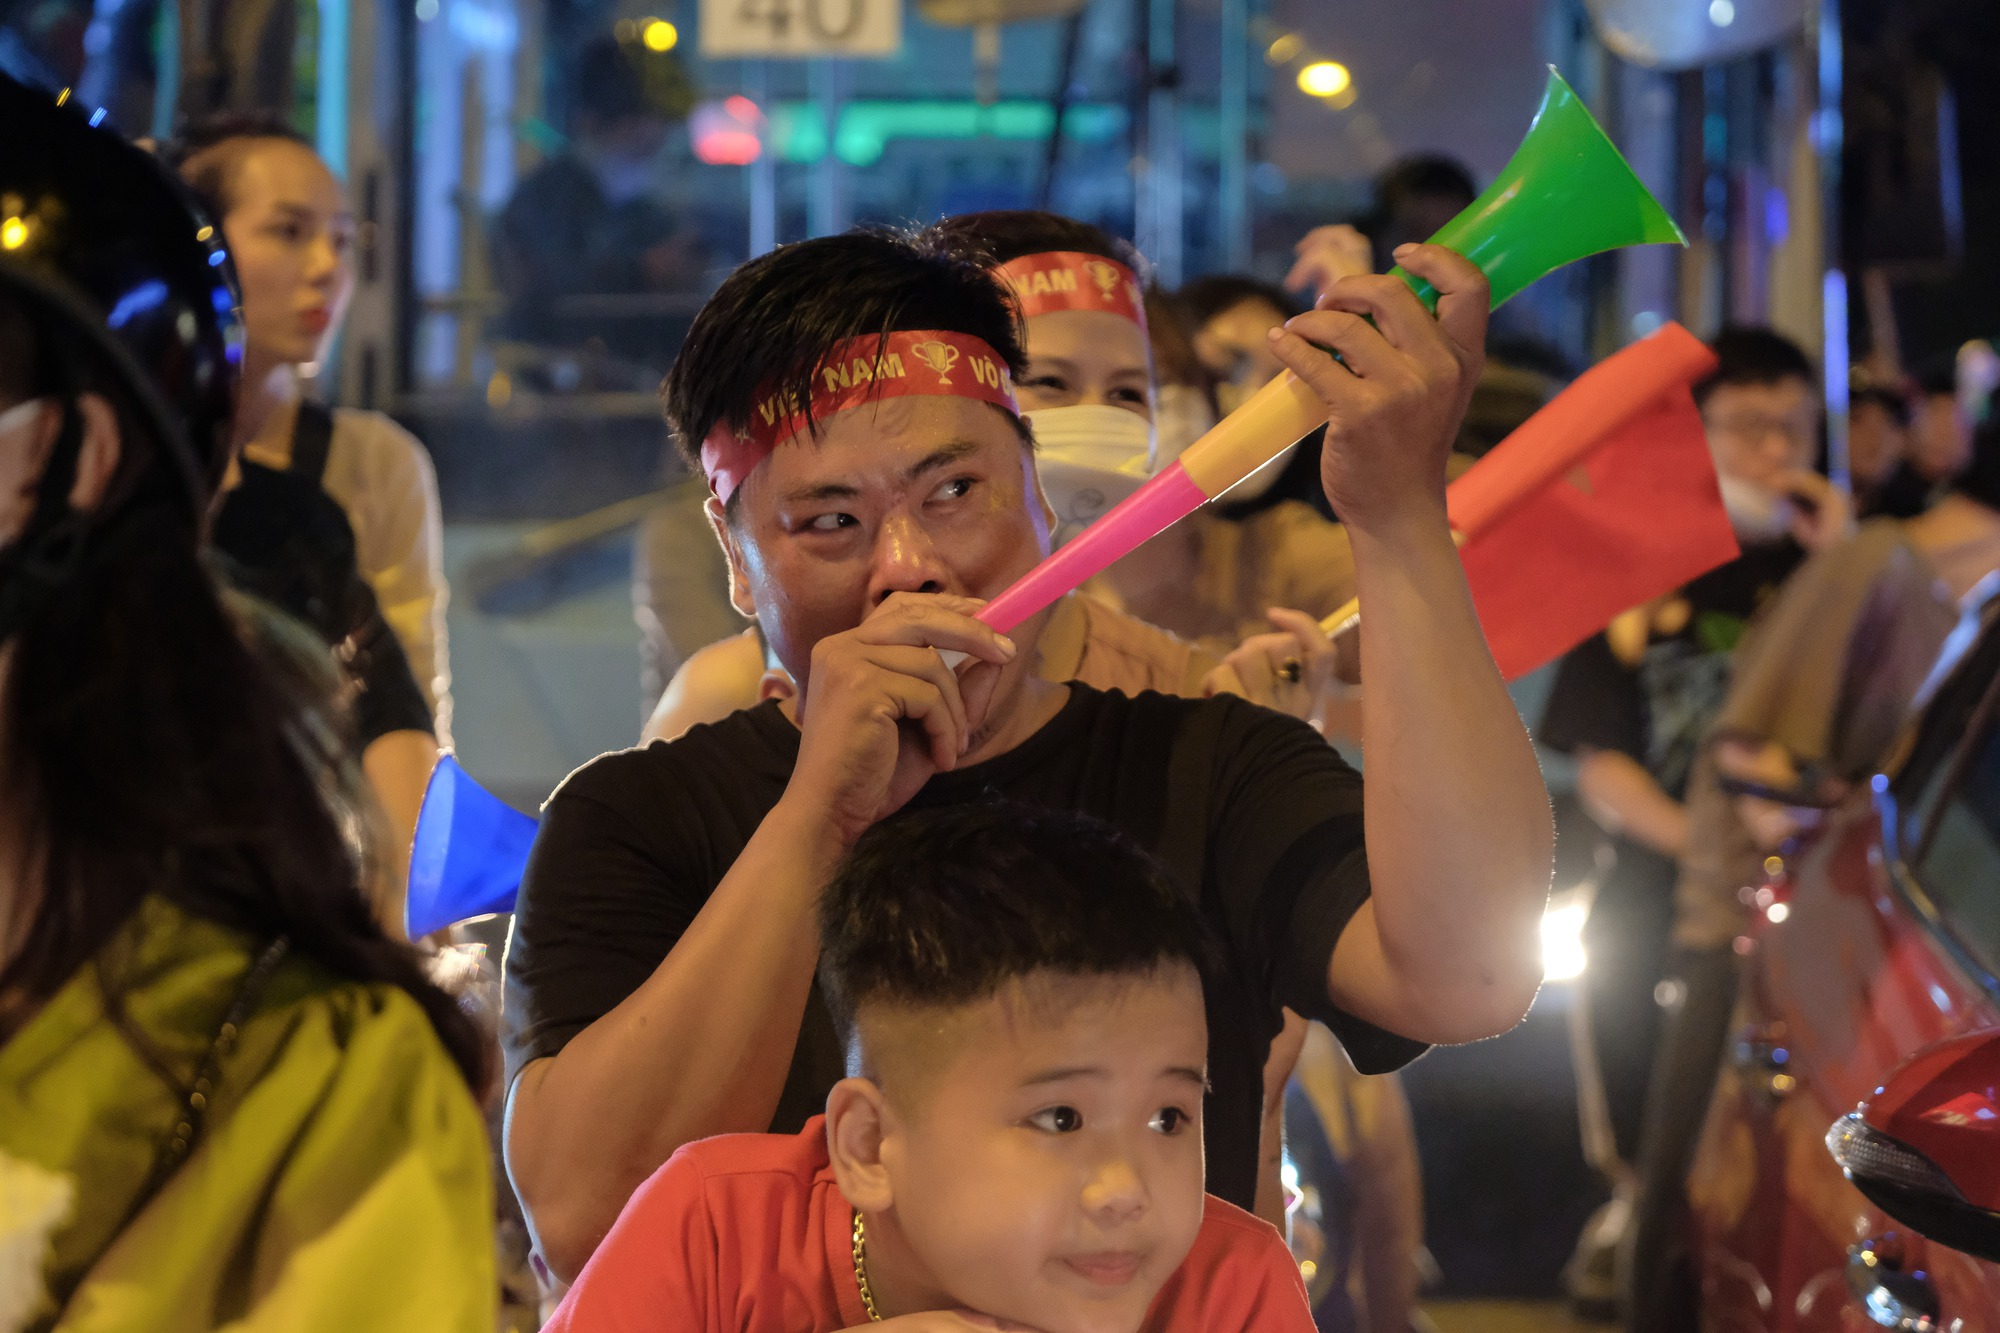 Đêm U23 Việt Nam giành HCV SEA Games trả món nợ với người Thái, người dân cả nước xuống đường nhuộm đỏ mọi tuyến phố - Ảnh 15.